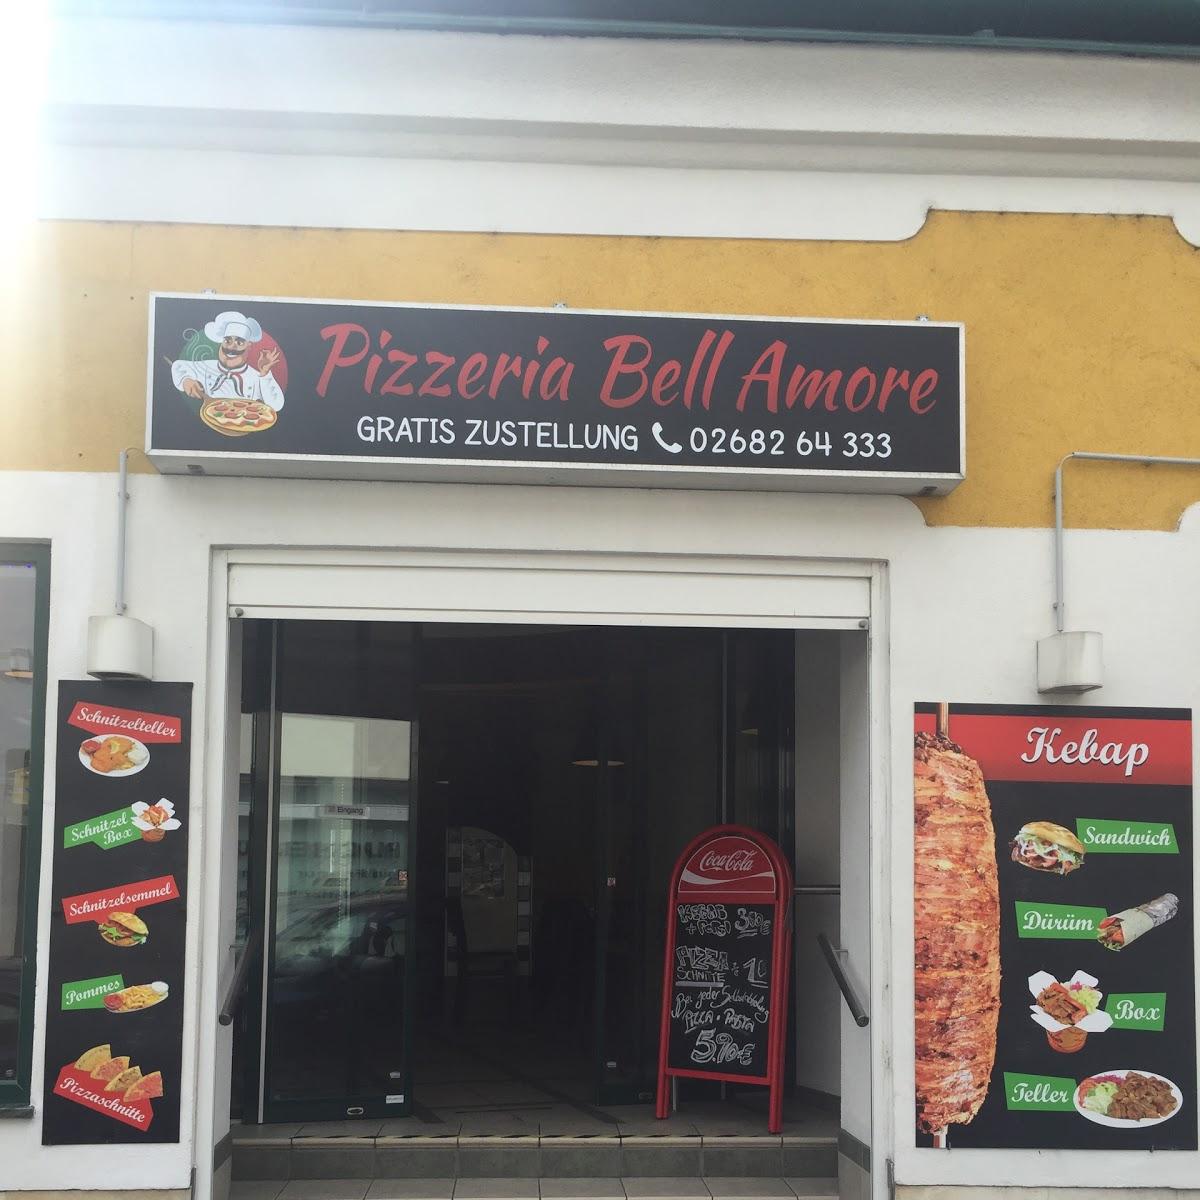 Restaurant "Pizzeria Bell Amore" in Eisenstadt